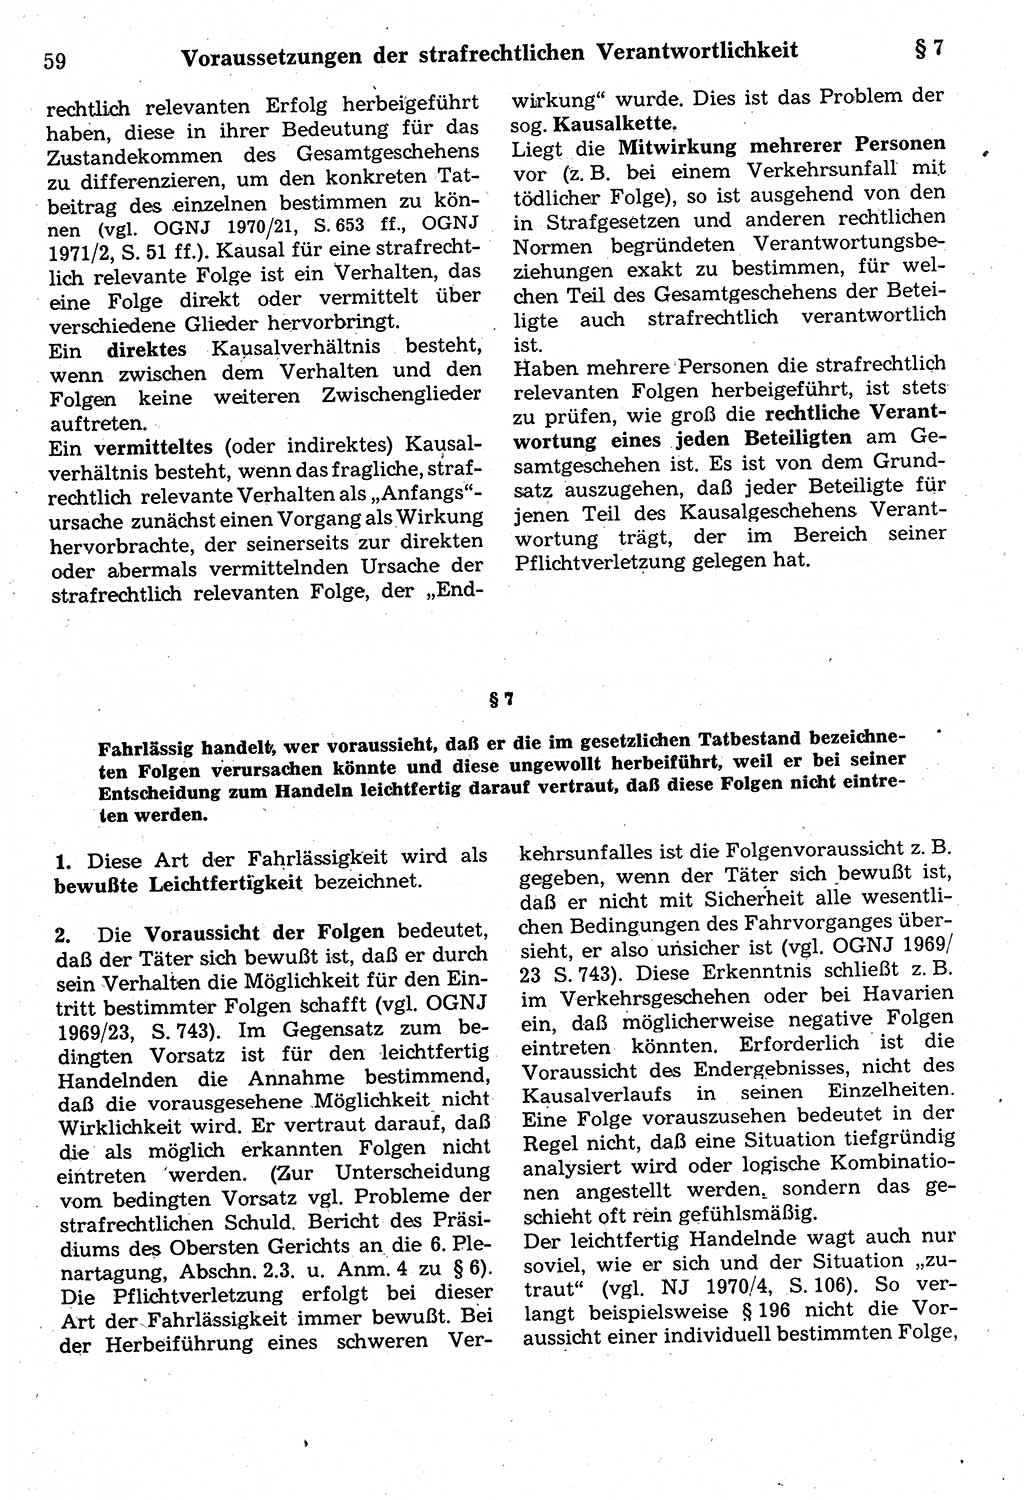 Strafrecht der Deutschen Demokratischen Republik (DDR), Kommentar zum Strafgesetzbuch (StGB) 1987, Seite 59 (Strafr. DDR Komm. StGB 1987, S. 59)